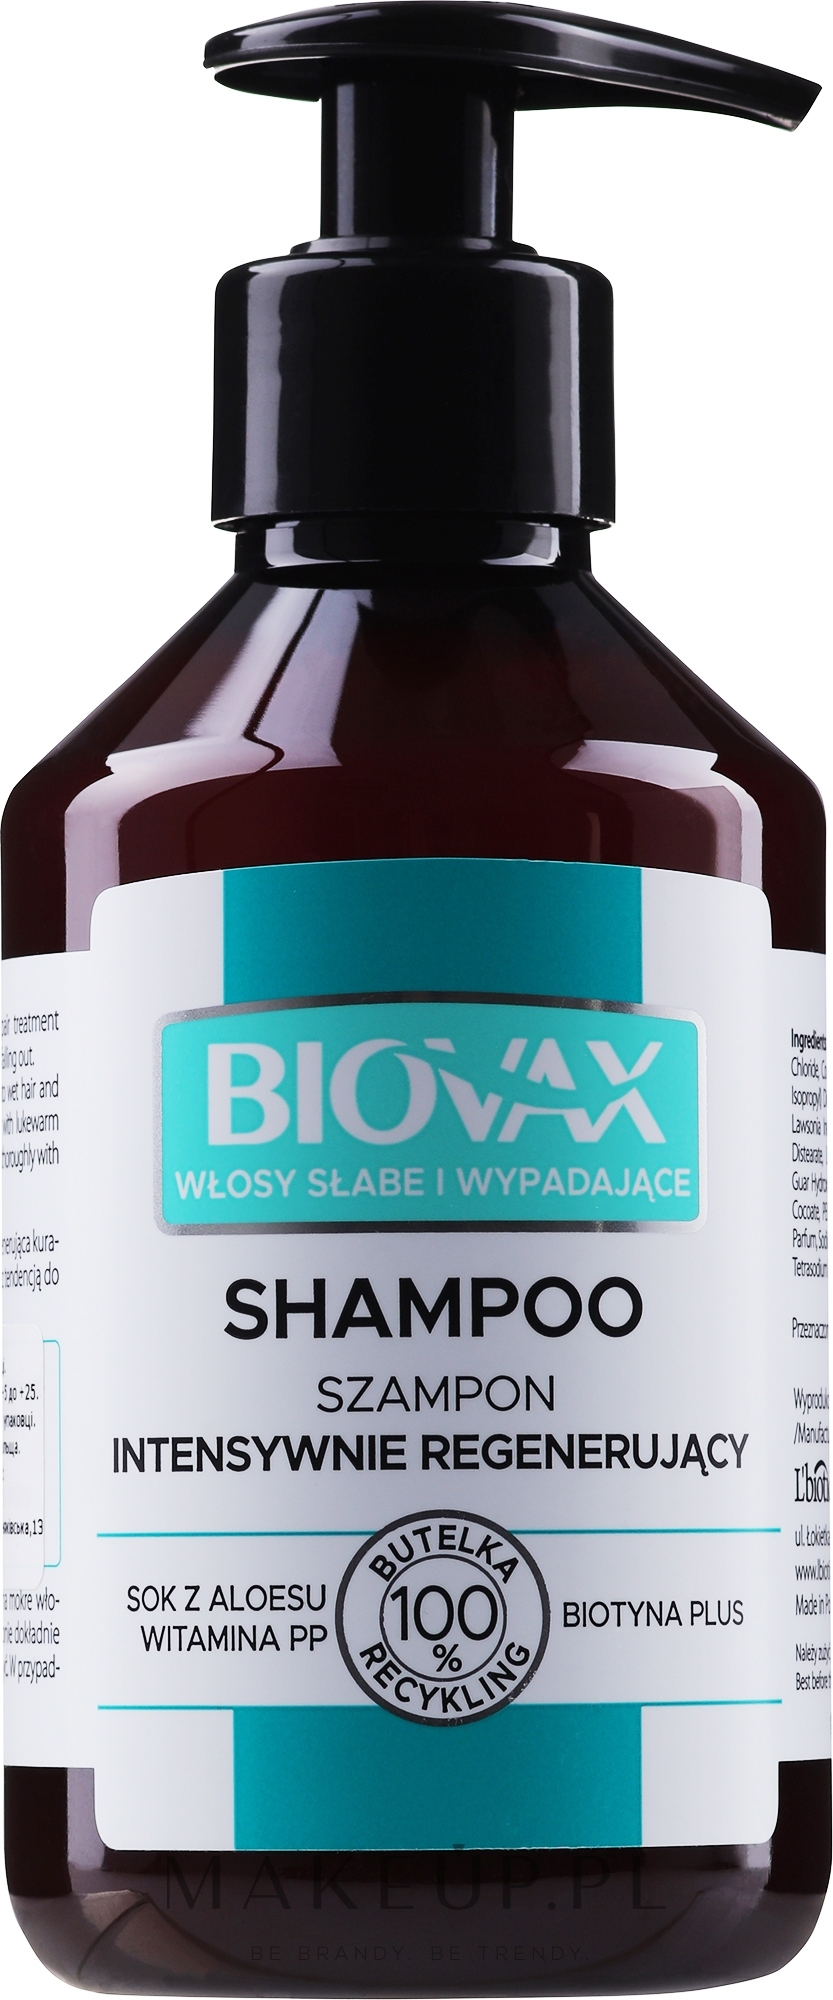 biovax szampon i maseczka wlosy wypadajace